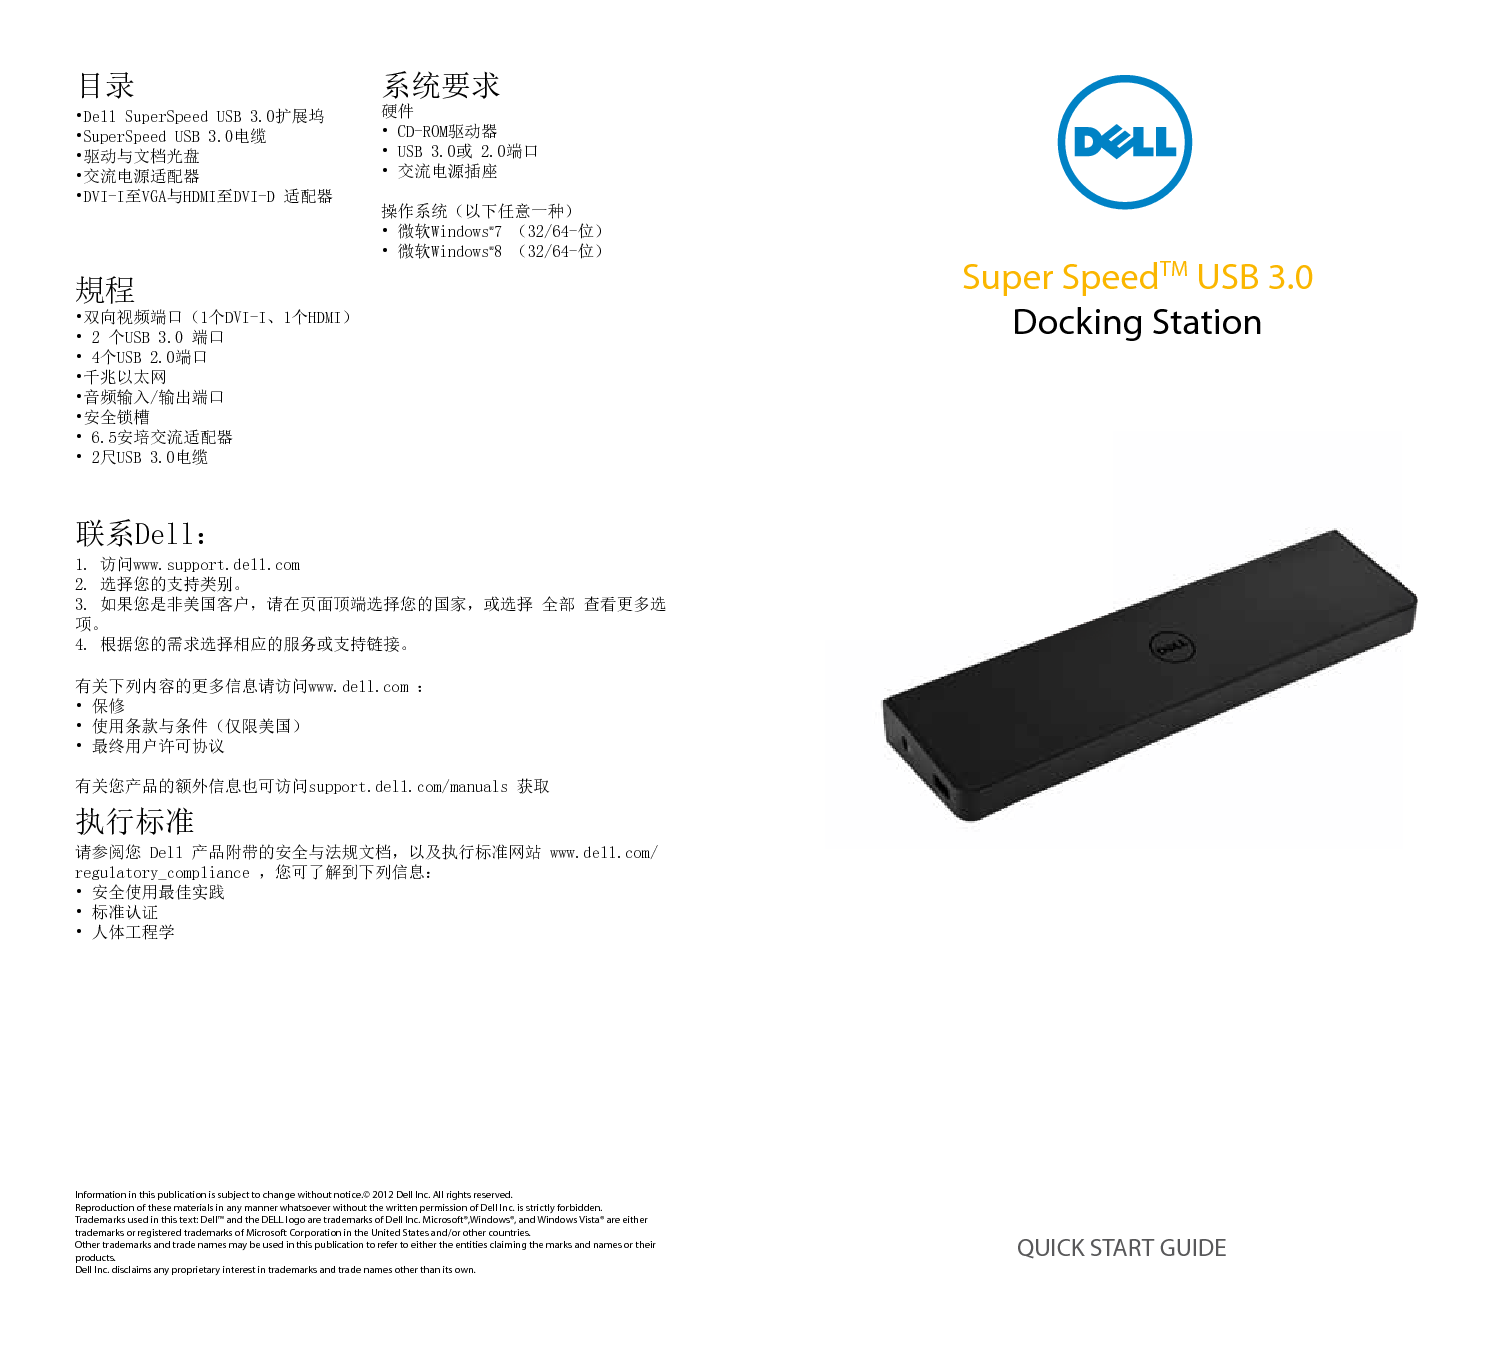 戴尔 Dell Super Speed USB 3.0 Docking Station 快速用户指南 封面